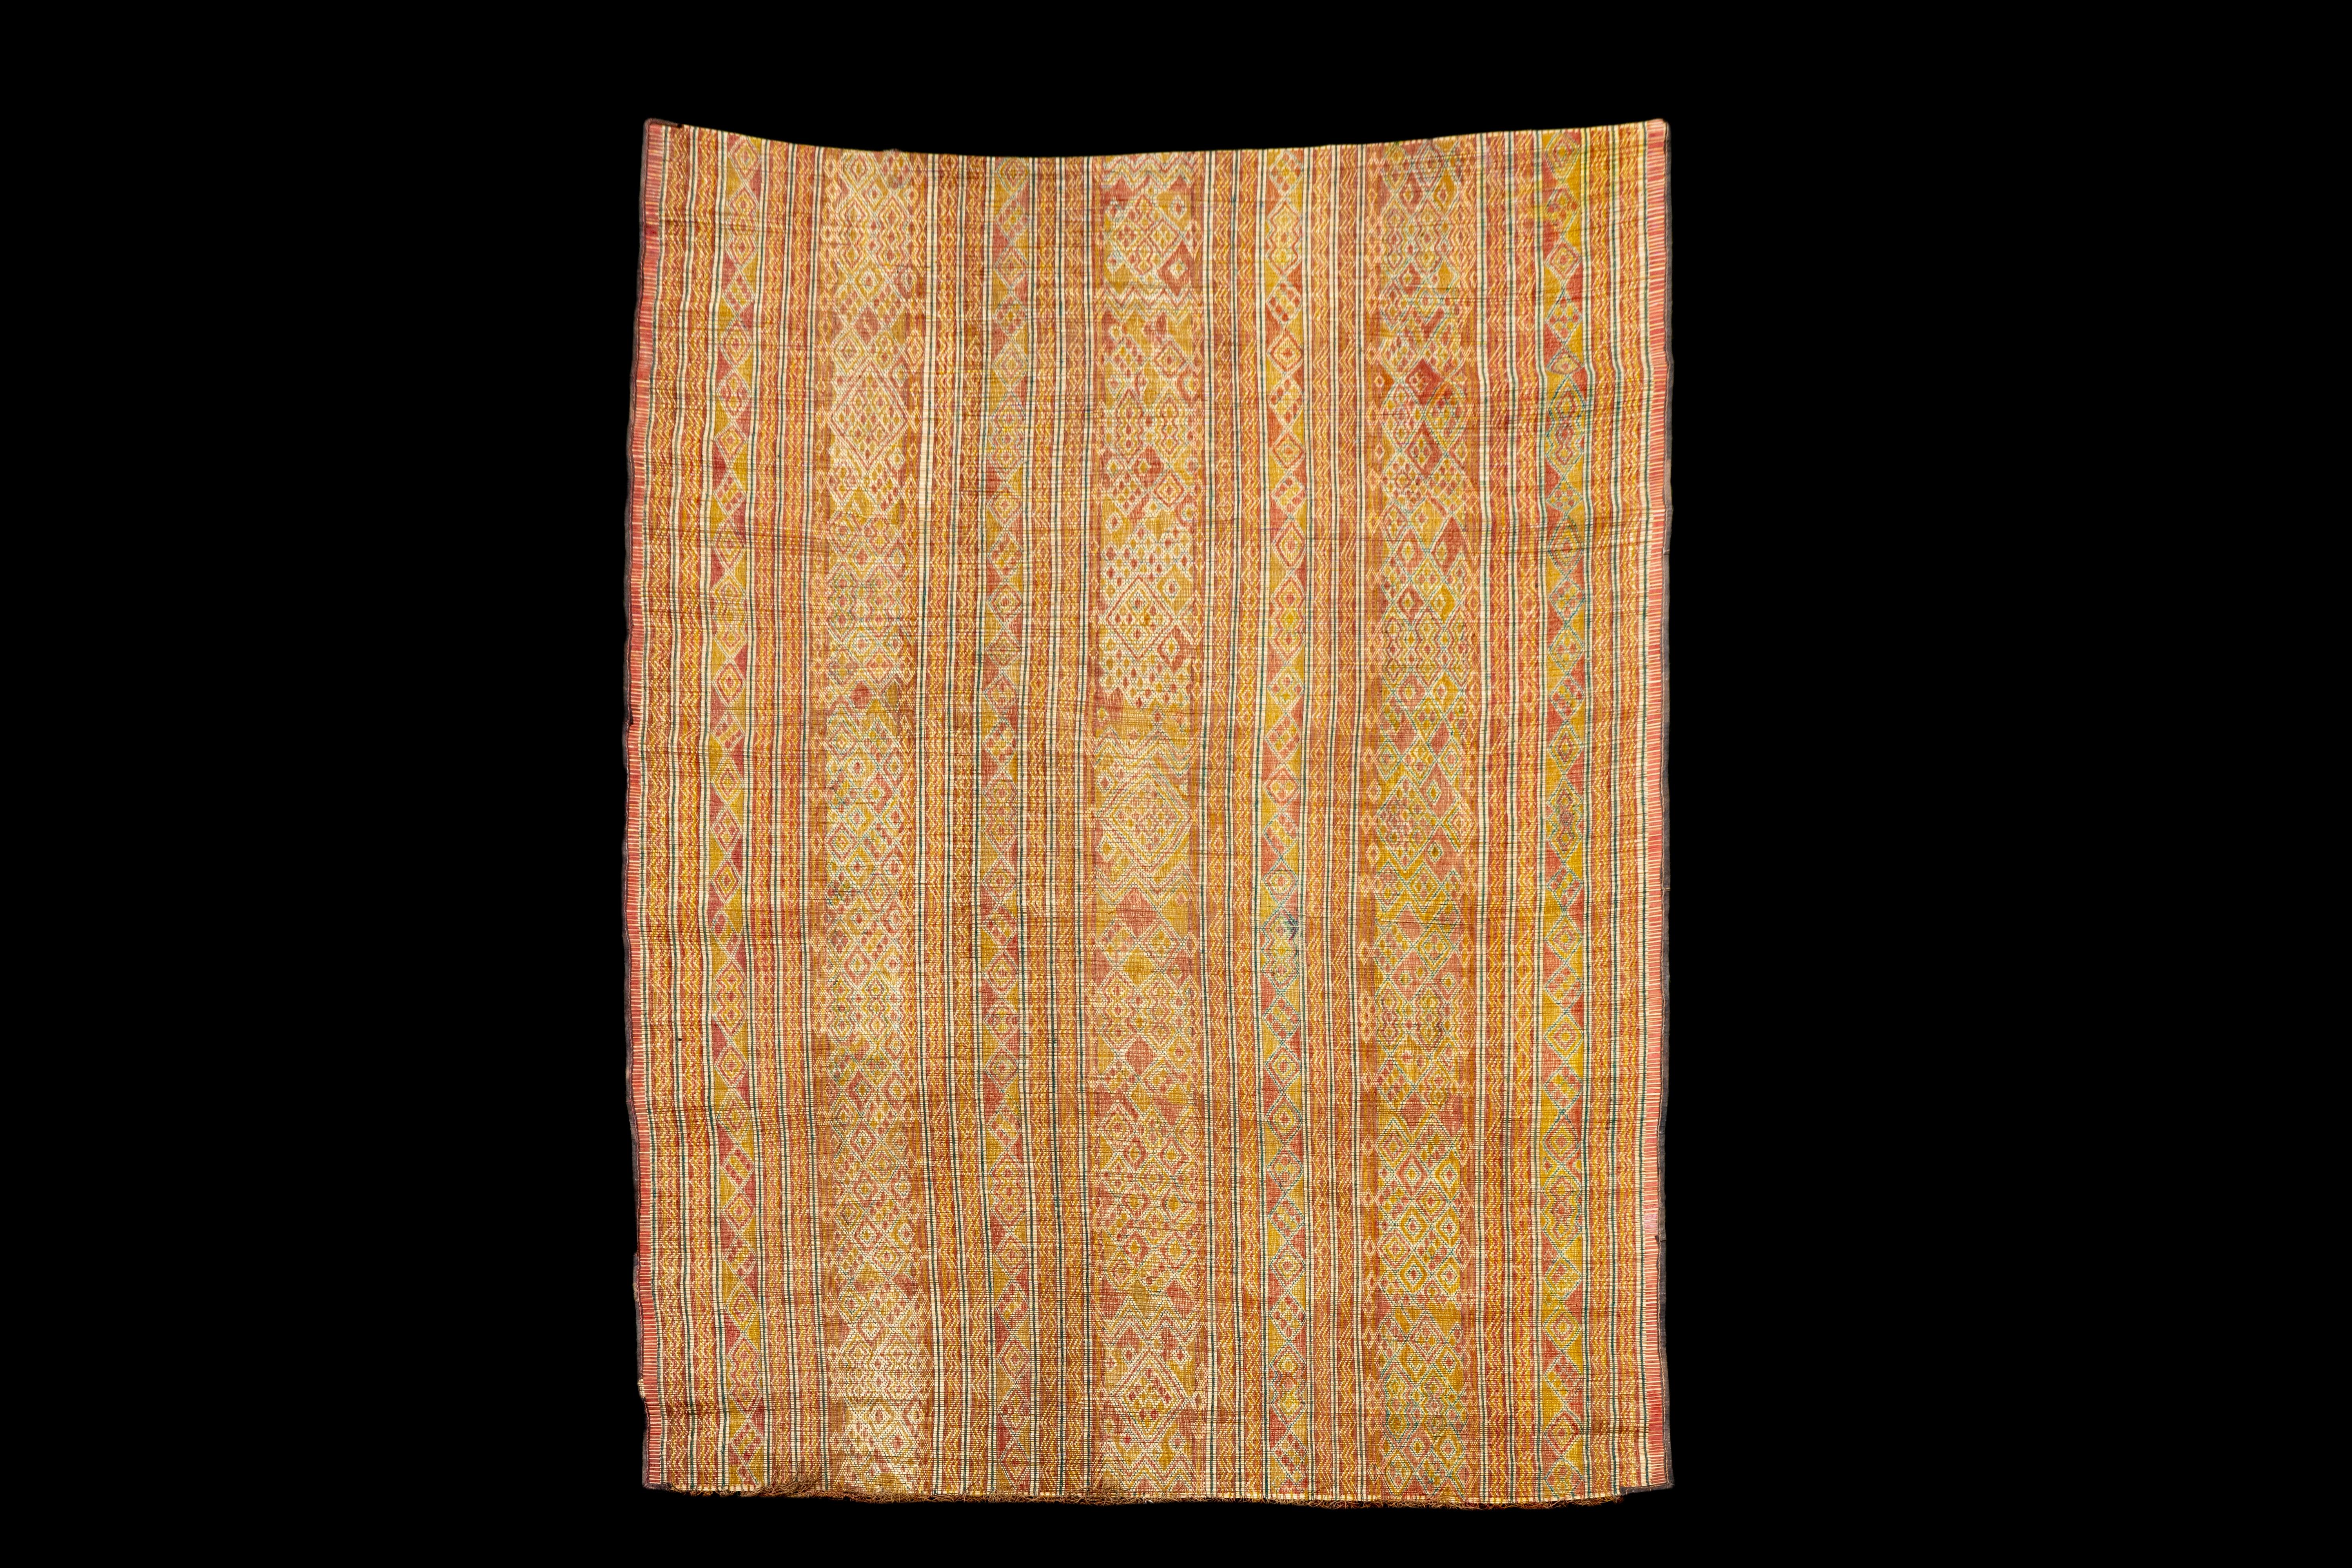 Le tapis mauritanien, véritable témoignage de la richesse du patrimoine et de l'artisanat de la culture nord-africaine. Fabriqué à la main par les tribus touaregs de Mauritanie, ce tapis en cuir marocain mauritanien (touareg) est une fusion